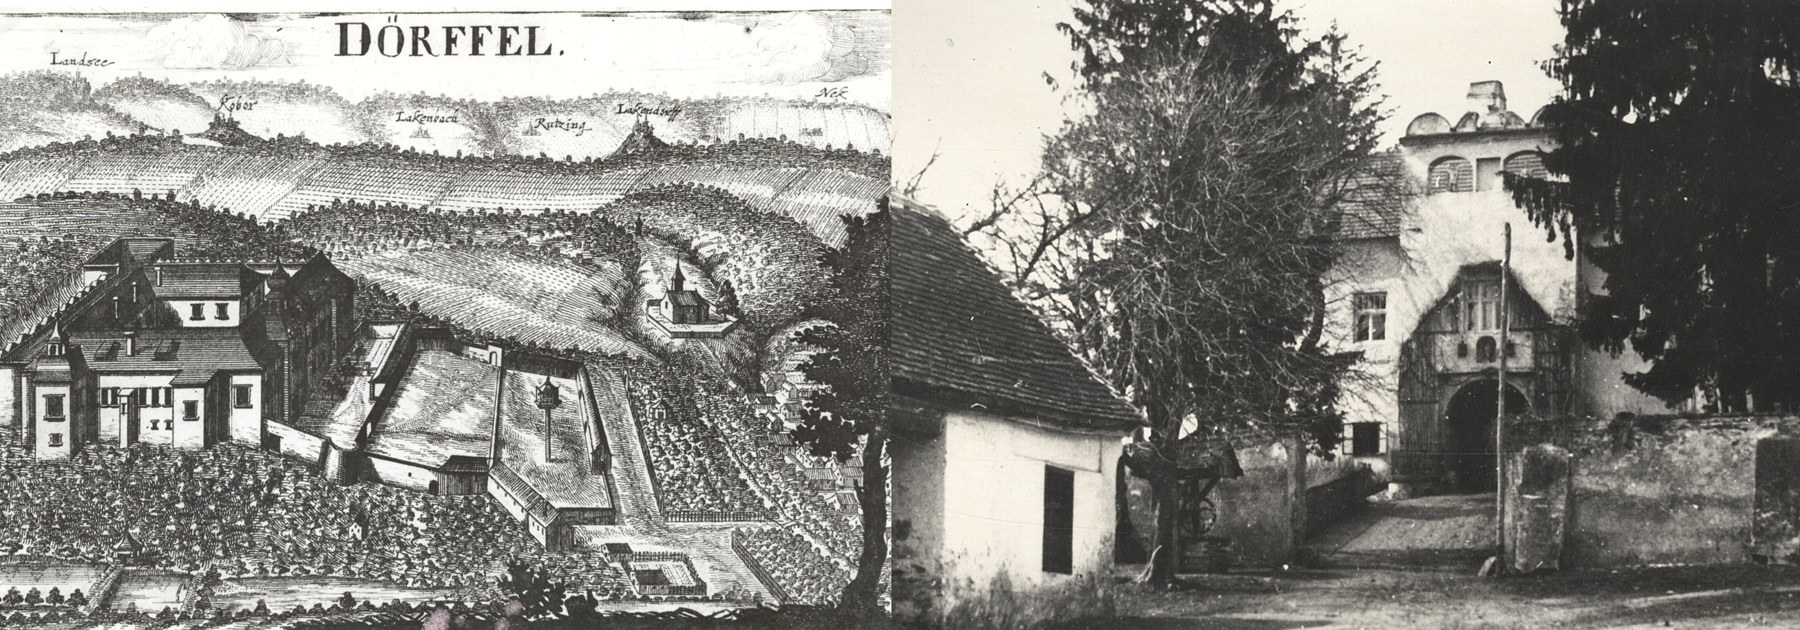 linkes Bild (historische Zeichnung von oben), rechtes Bild (Haus mit großen Toreingang)